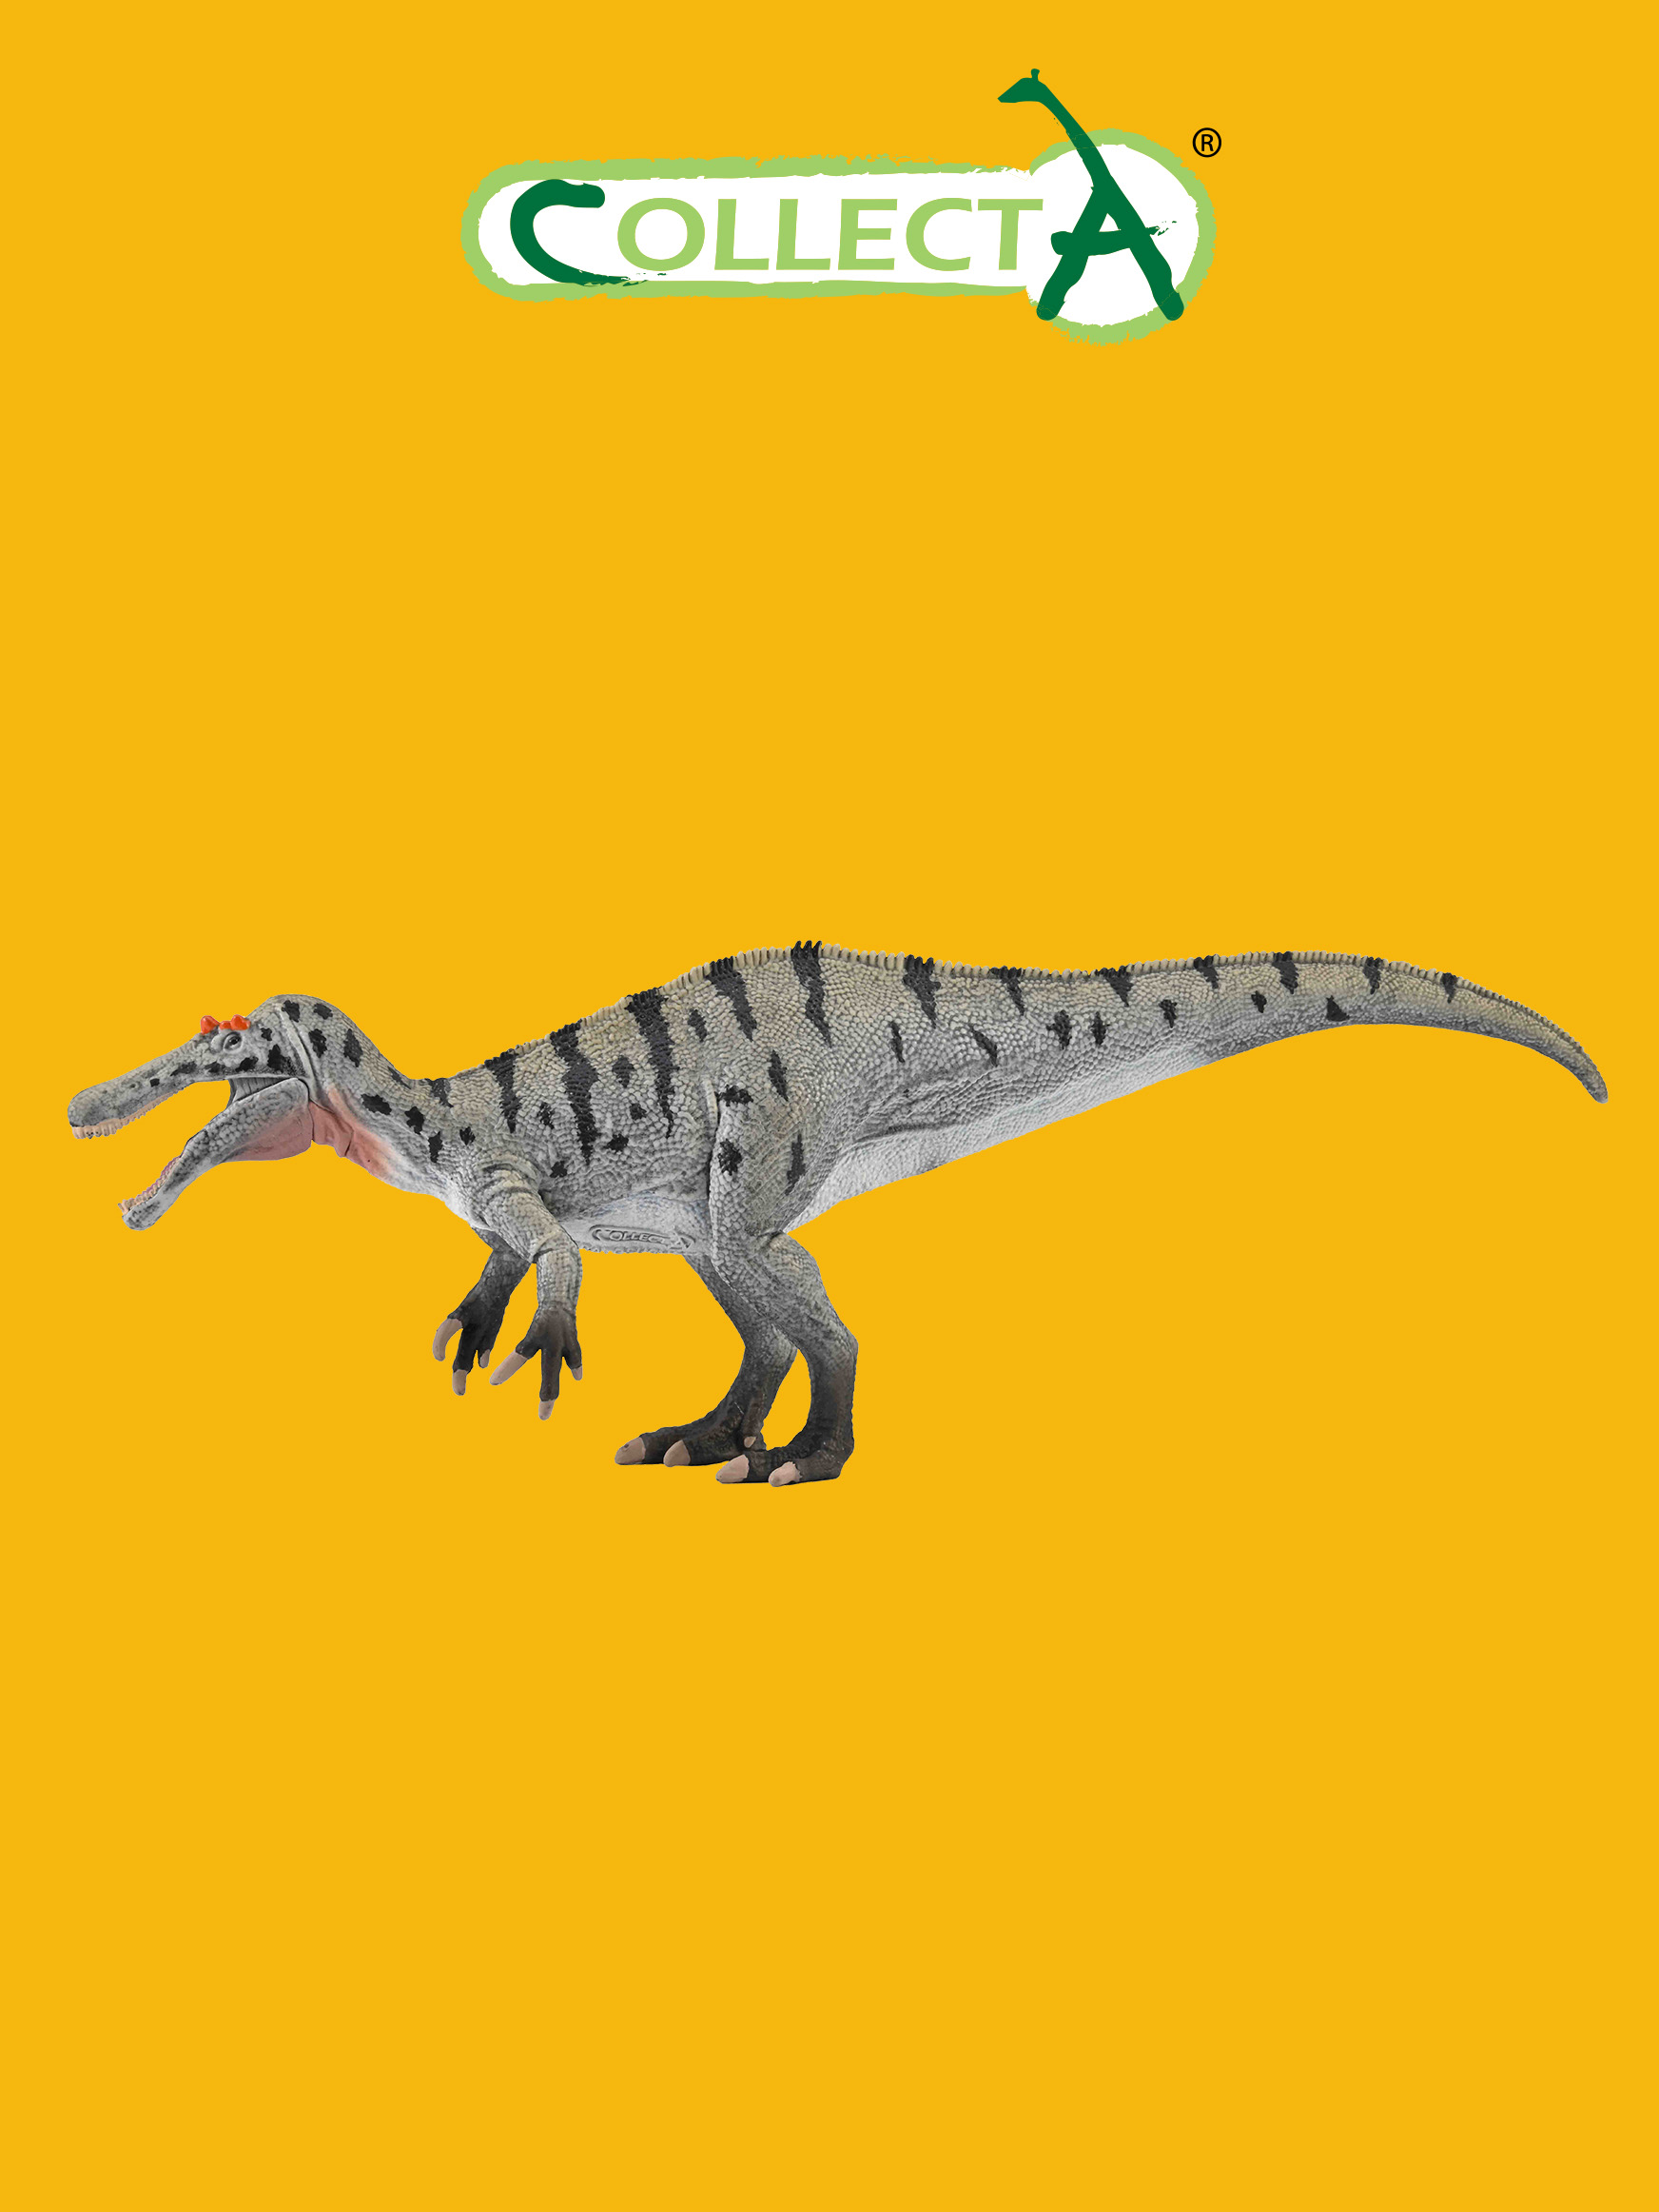 Фигурка Collecta динозавра Цератозухопсов подвижной челюстью фигурка динозавра collecta агустиния большая l 19 3 см